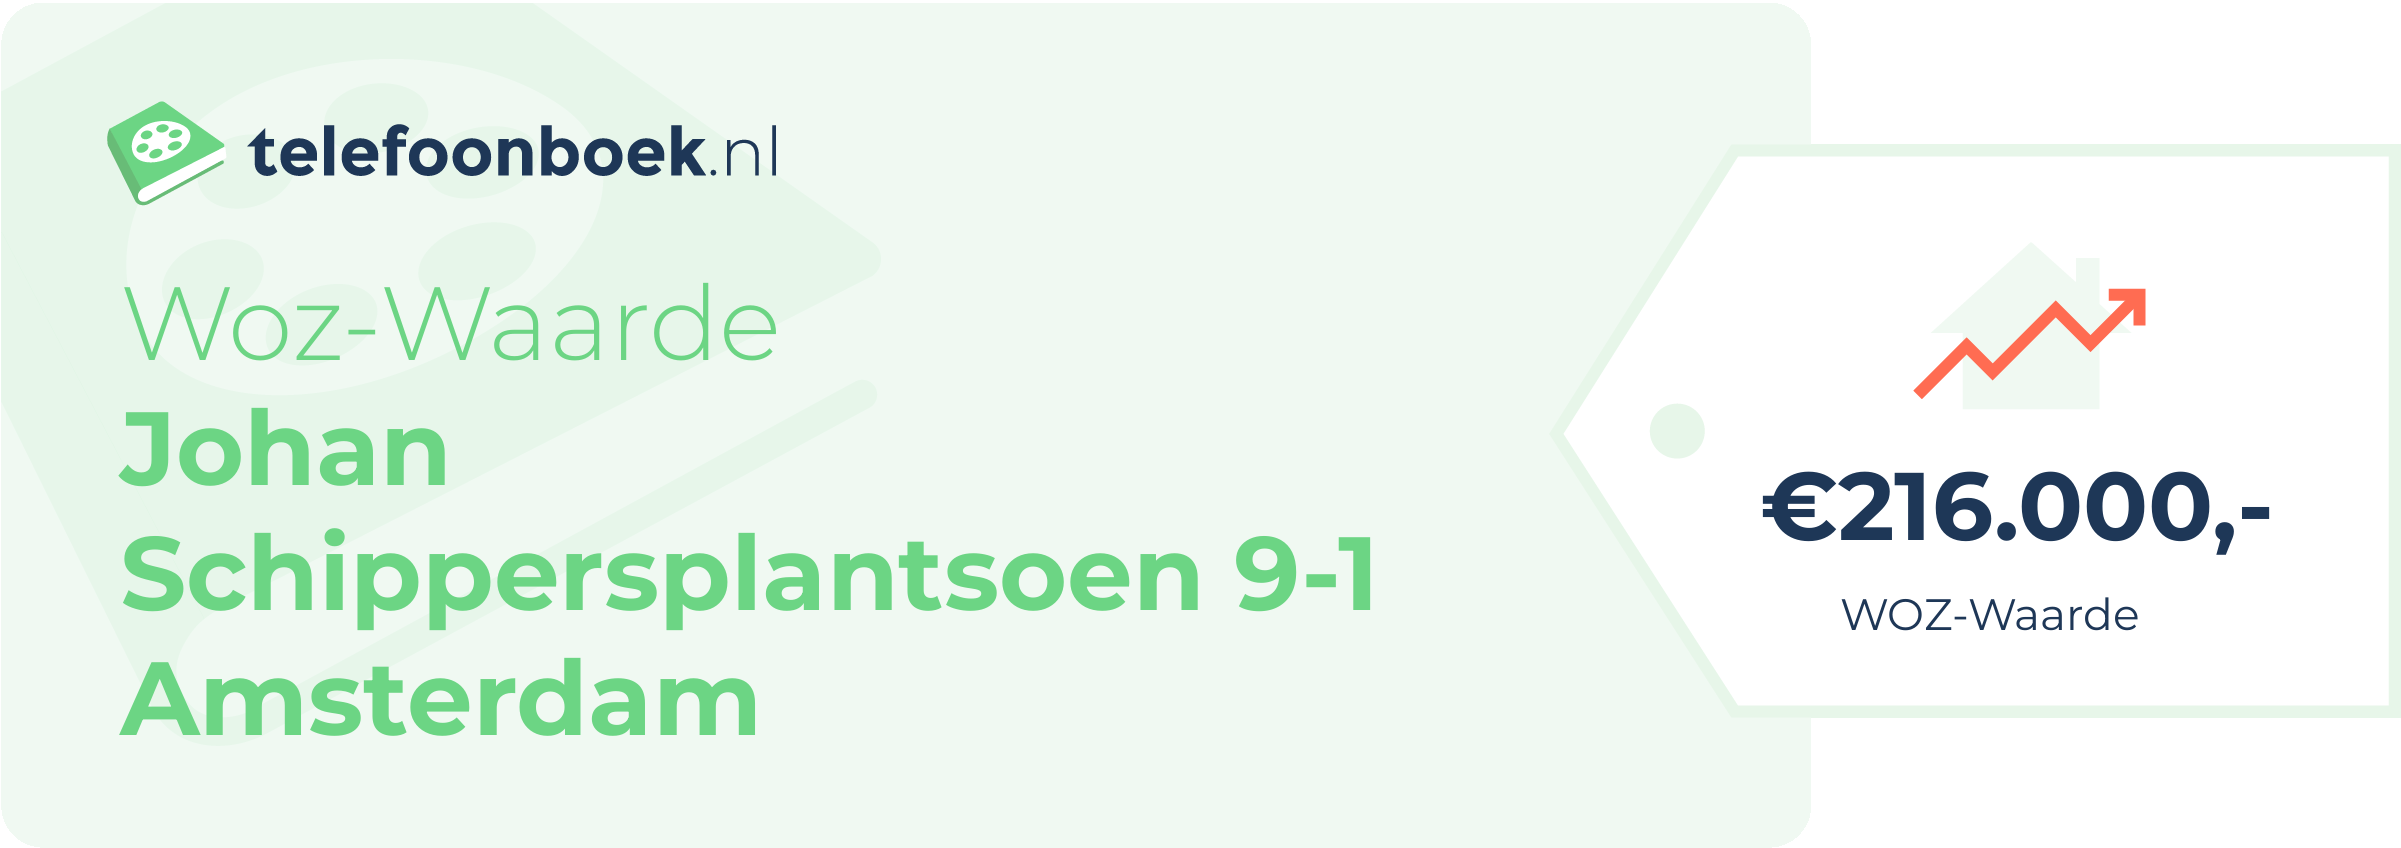 WOZ-waarde Johan Schippersplantsoen 9-1 Amsterdam